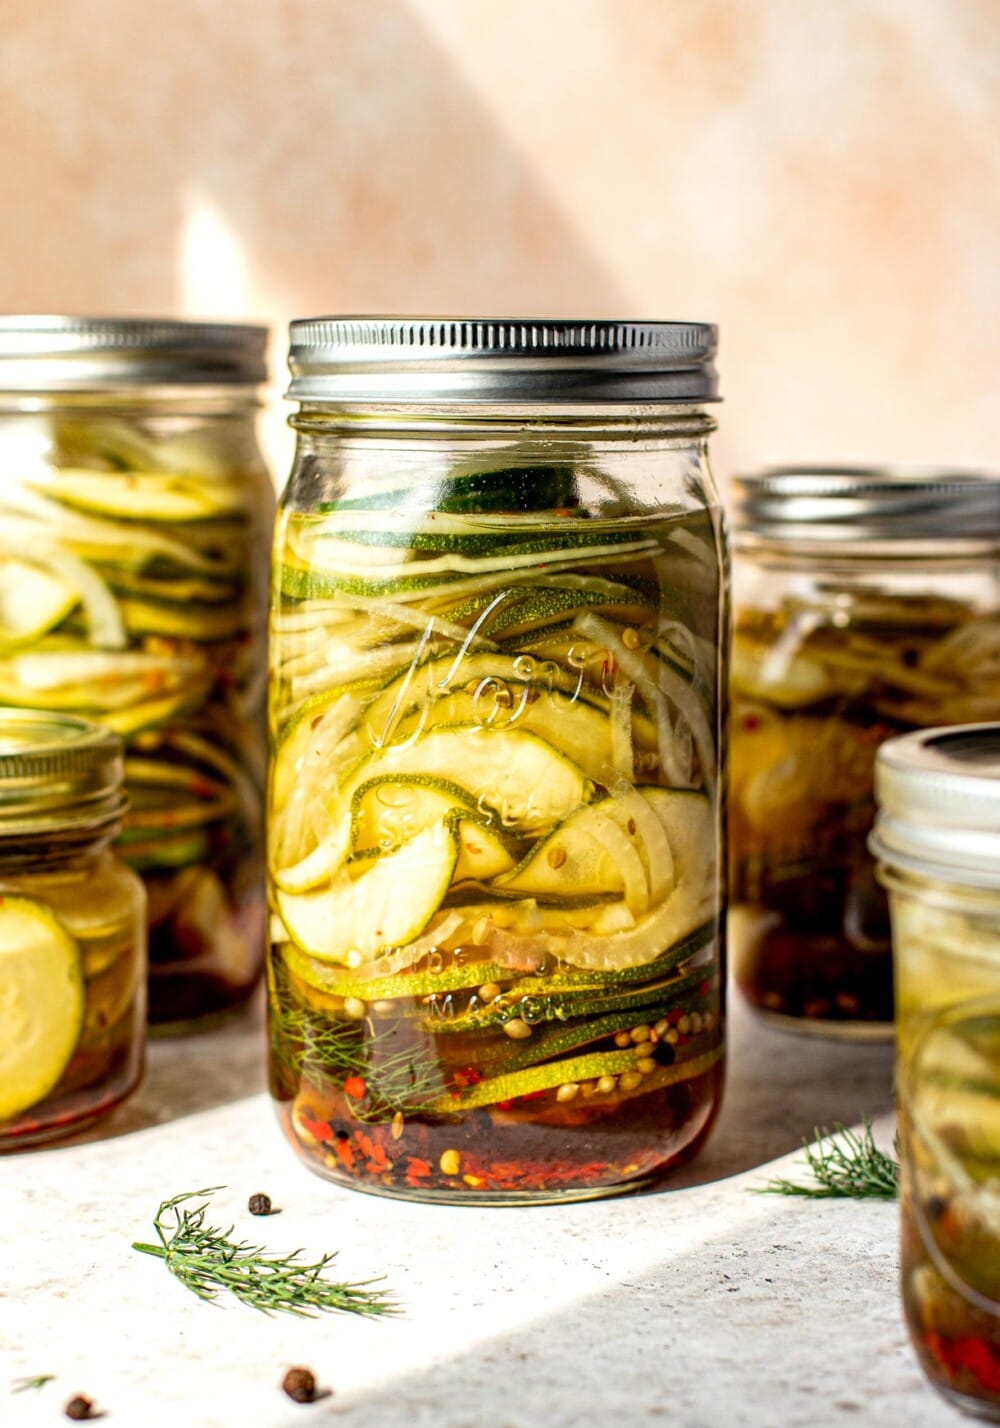 zucchini pickles in a glass jar